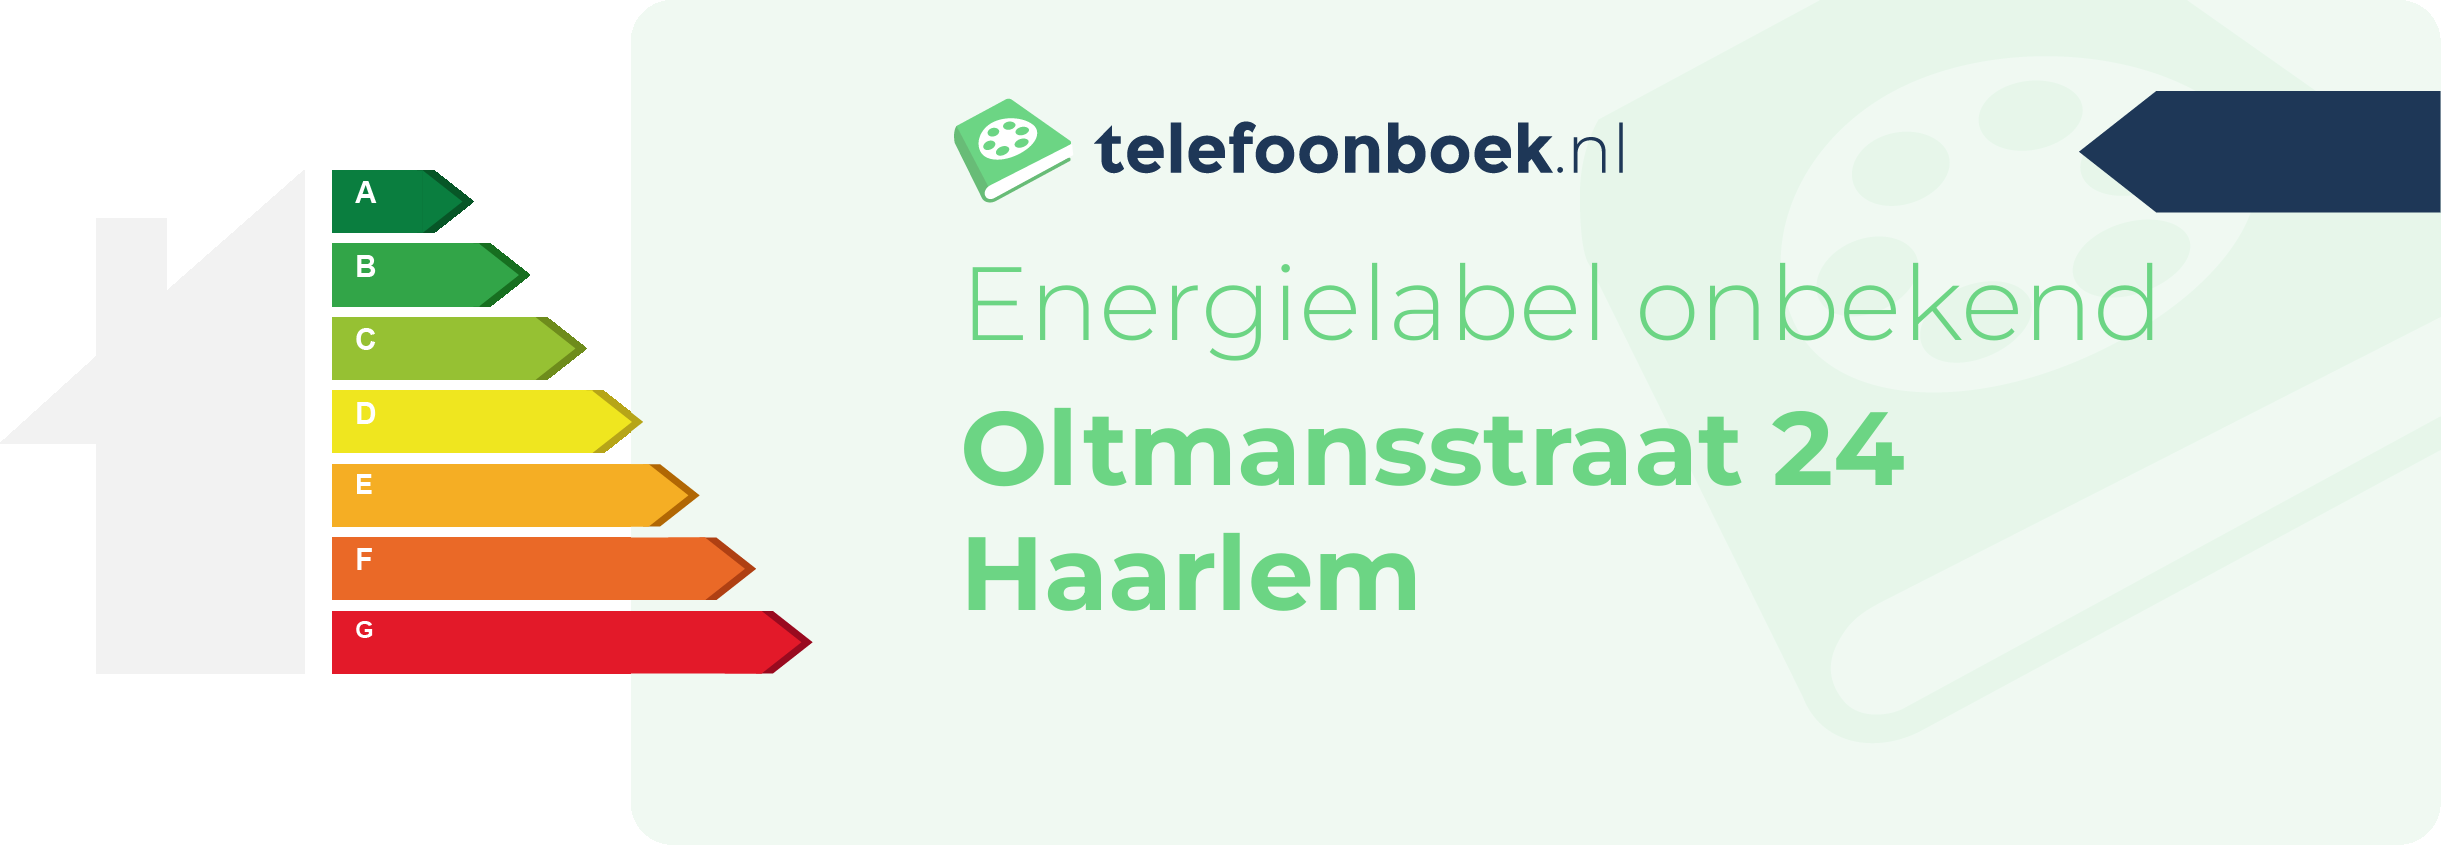 Energielabel Oltmansstraat 24 Haarlem